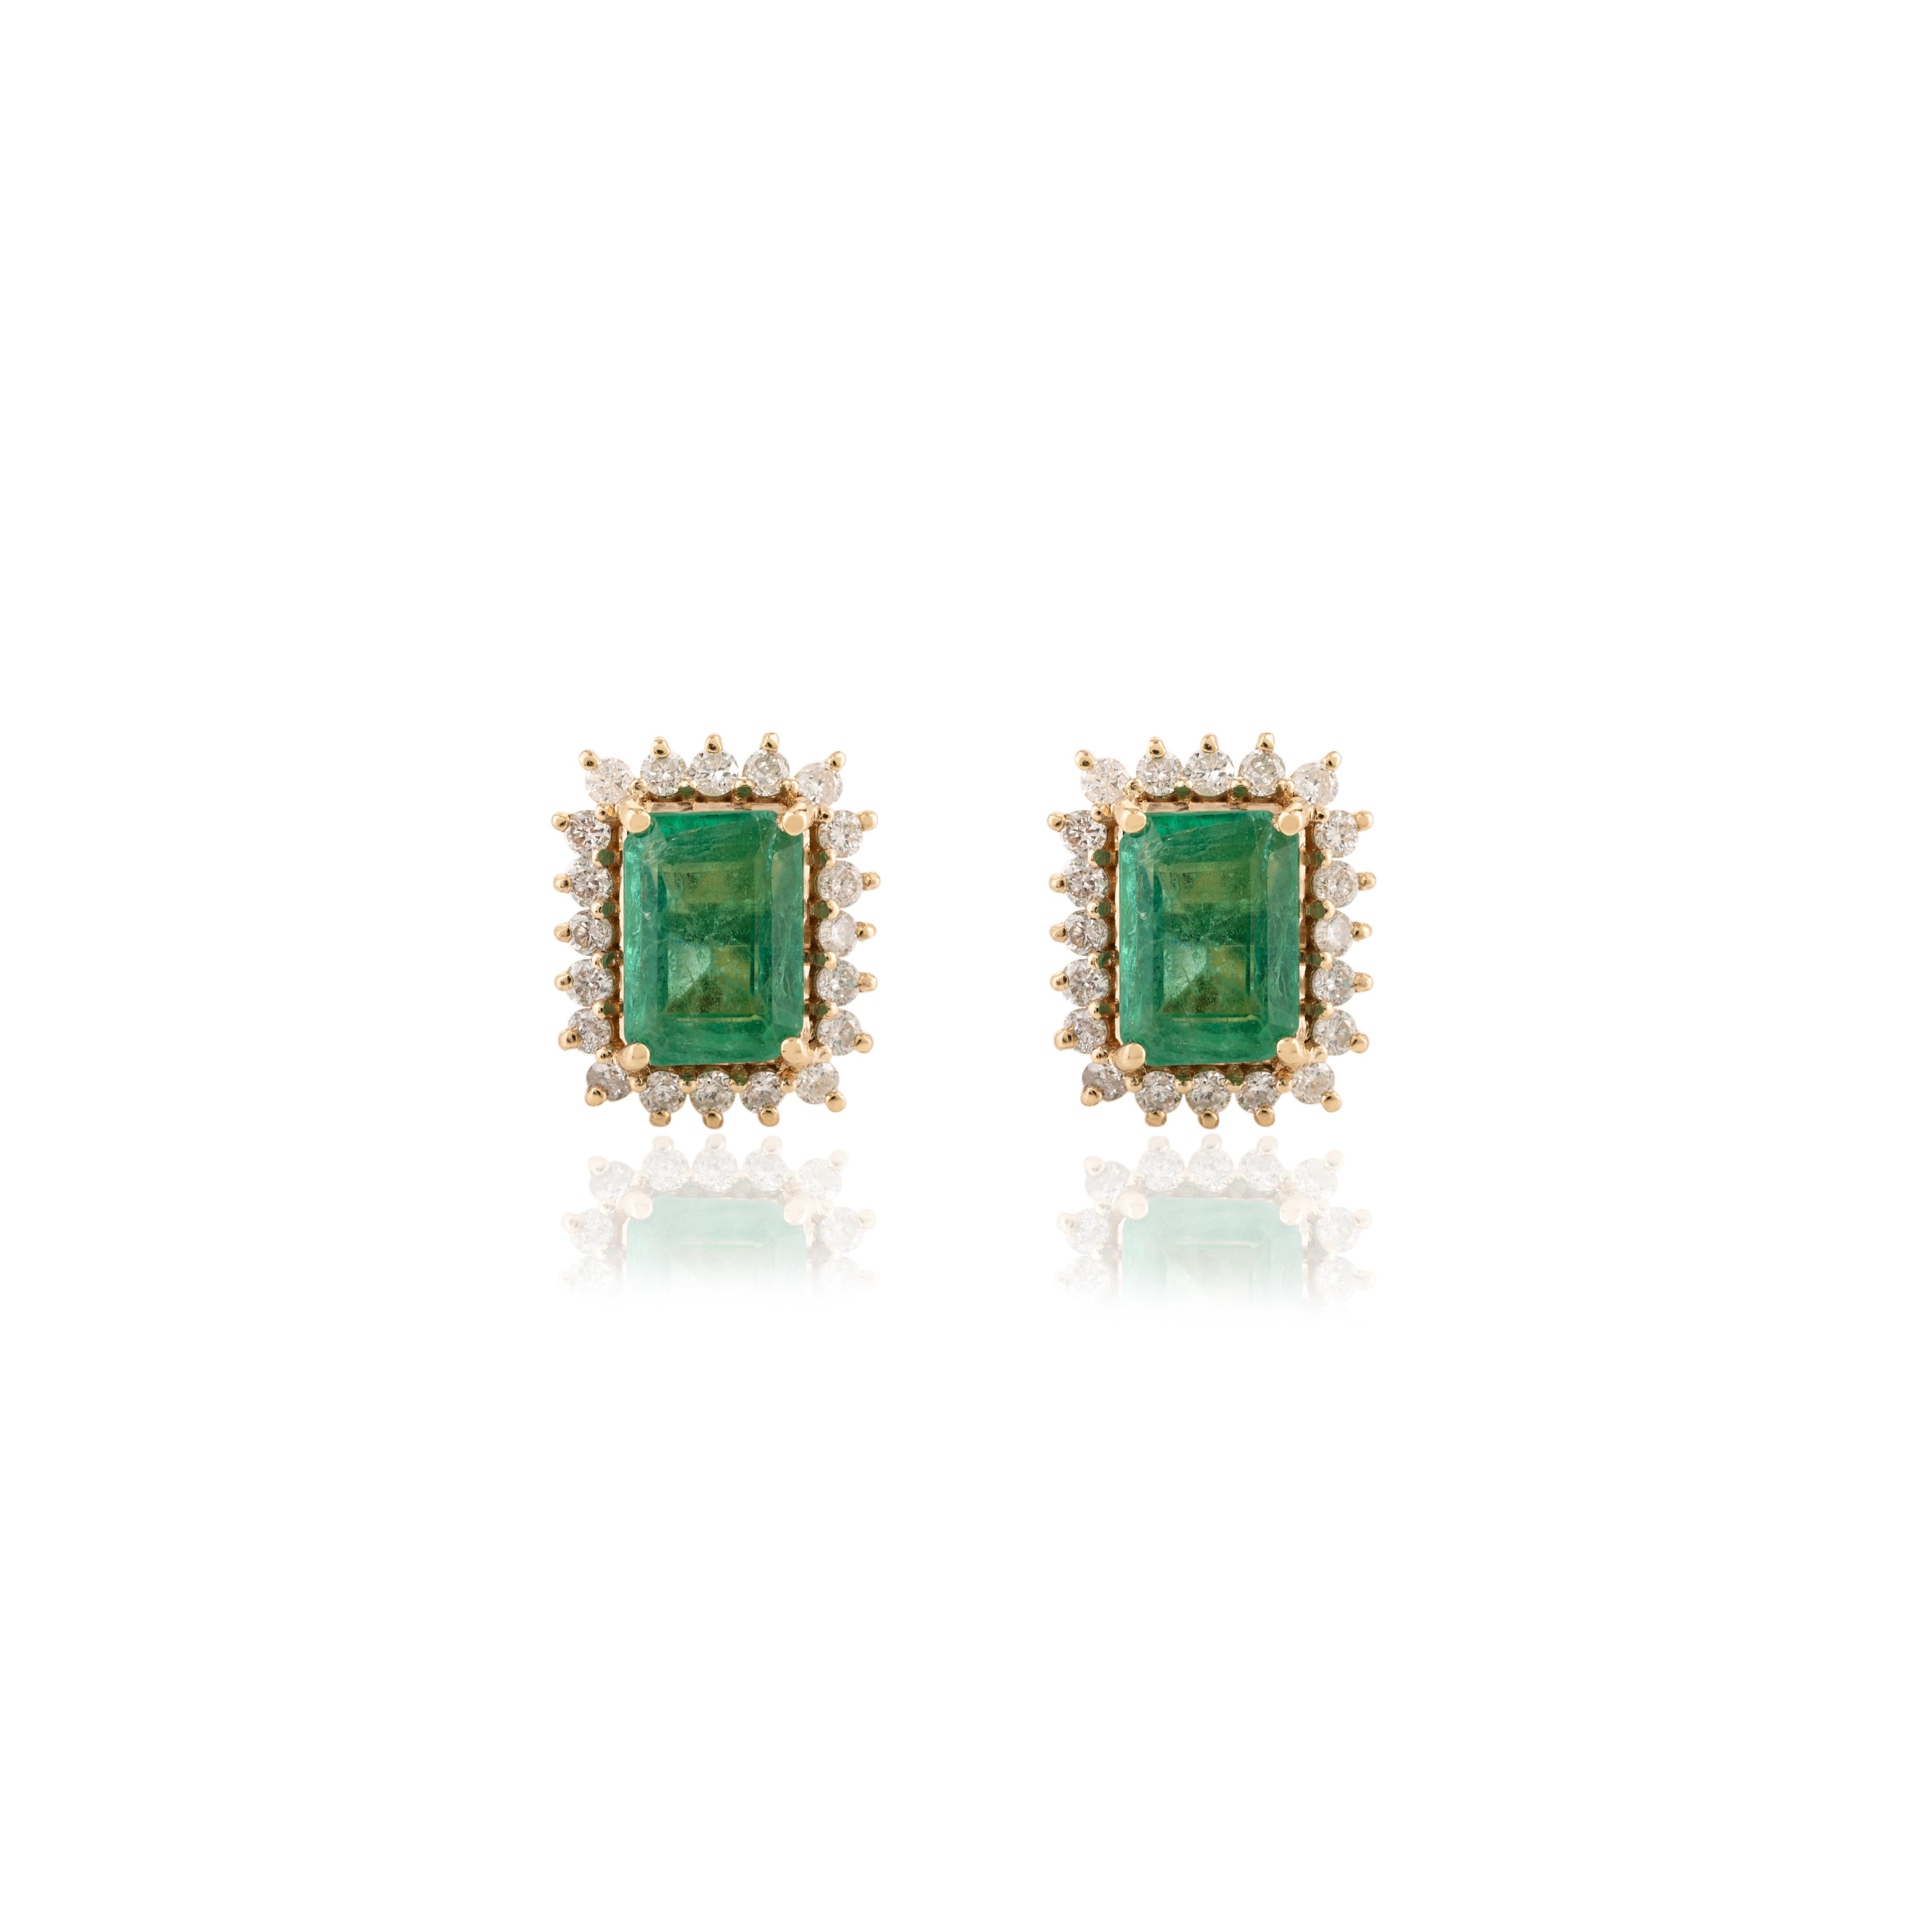 Art Deco 18 Karat Yellow Gold Certified Emerald Halo Diamond Stud Earrings for Women